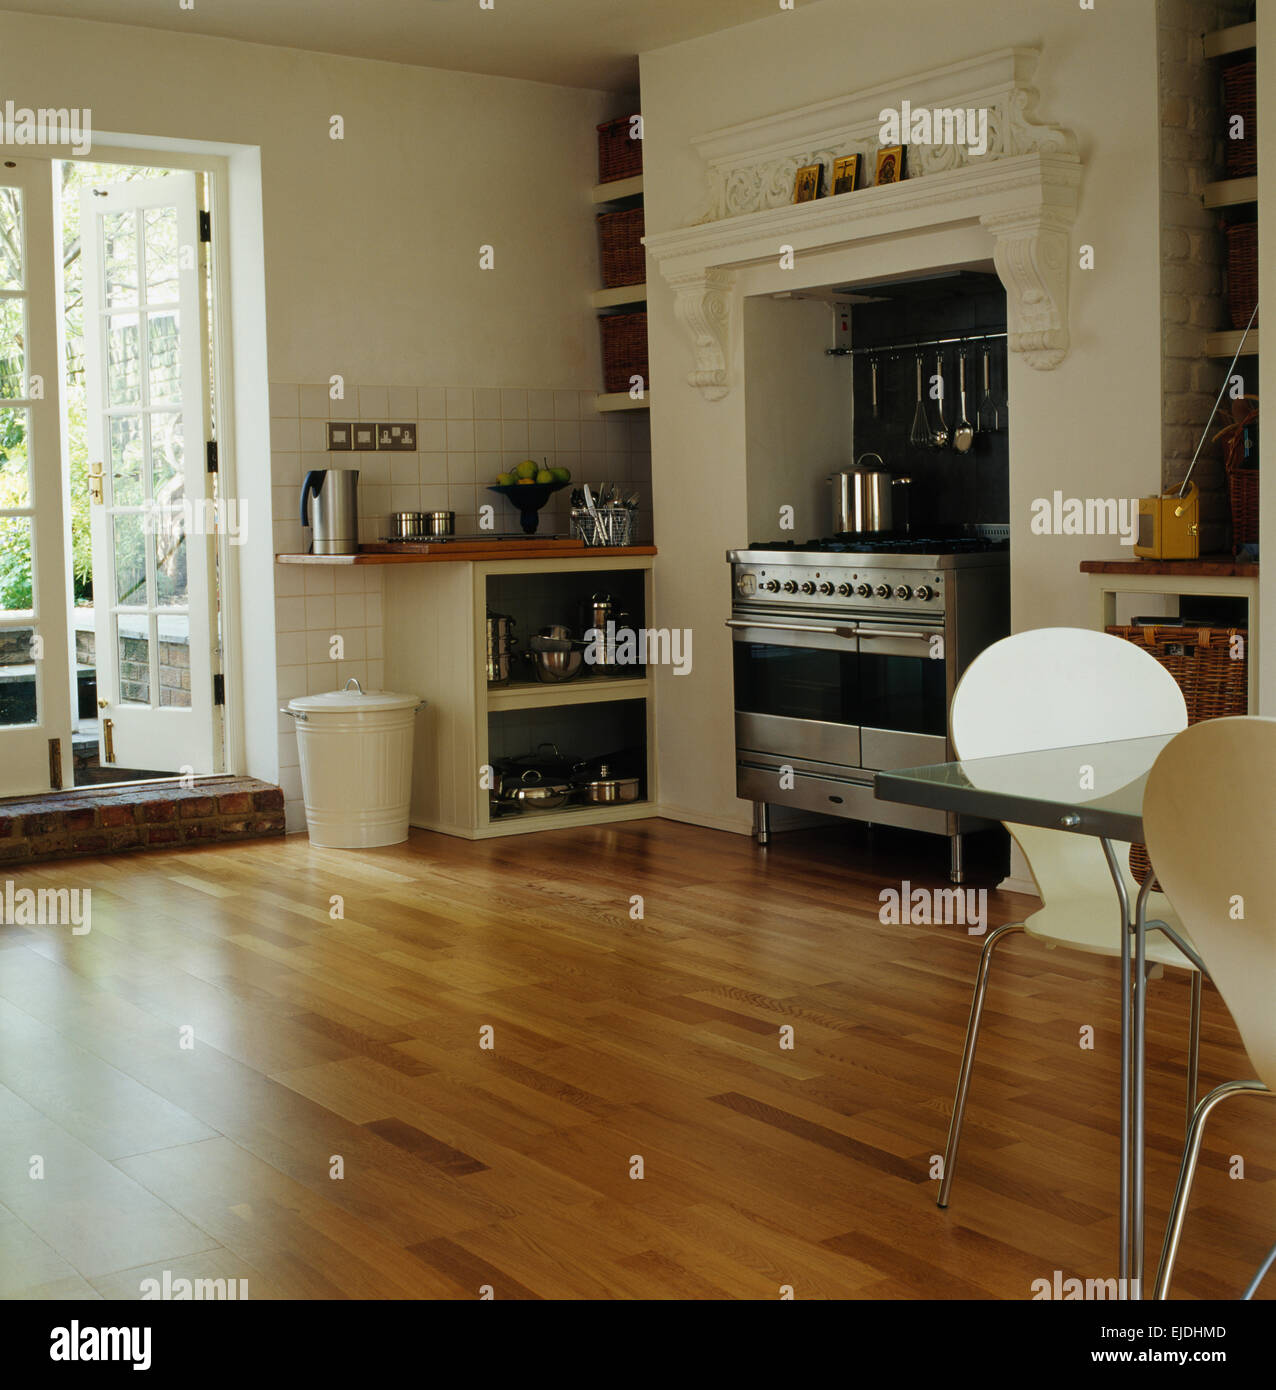 Holzböden und französische Fenster im Speisesaal moderne Küche mit Edelstahl-Herd Stockfoto